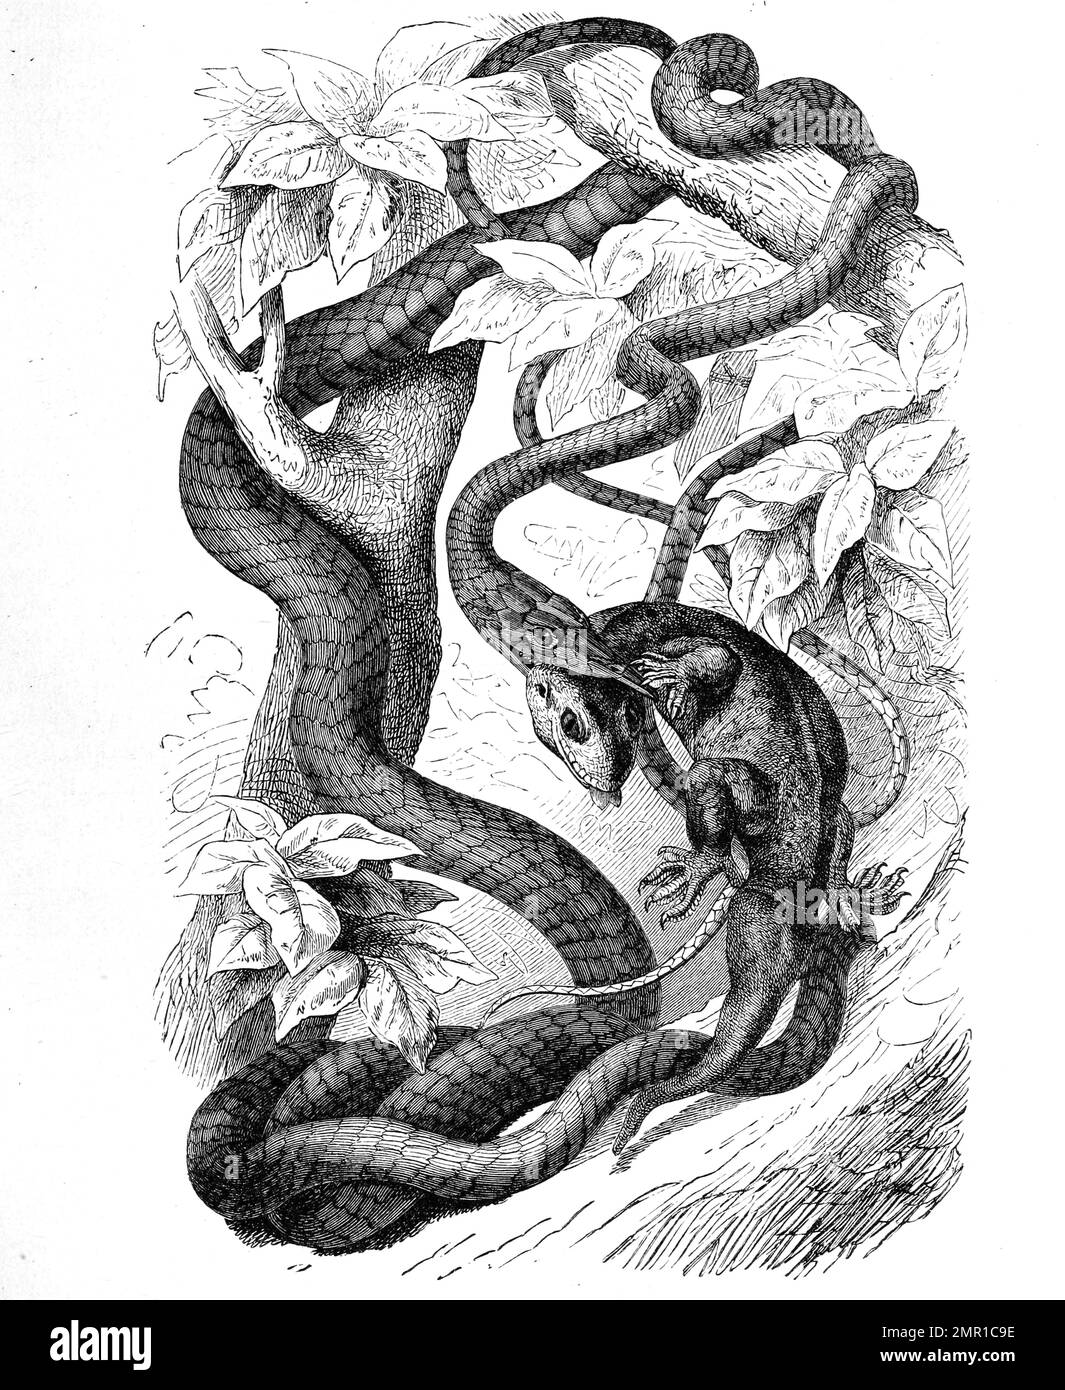 Reptilien, Dunkle Peitschenschlange, Dryophis pulverulentus, Demansia, Historisch, Digital restaurierte Reproduktion von einer Vorlage aus dem 19. Jahrhundert Banque D'Images